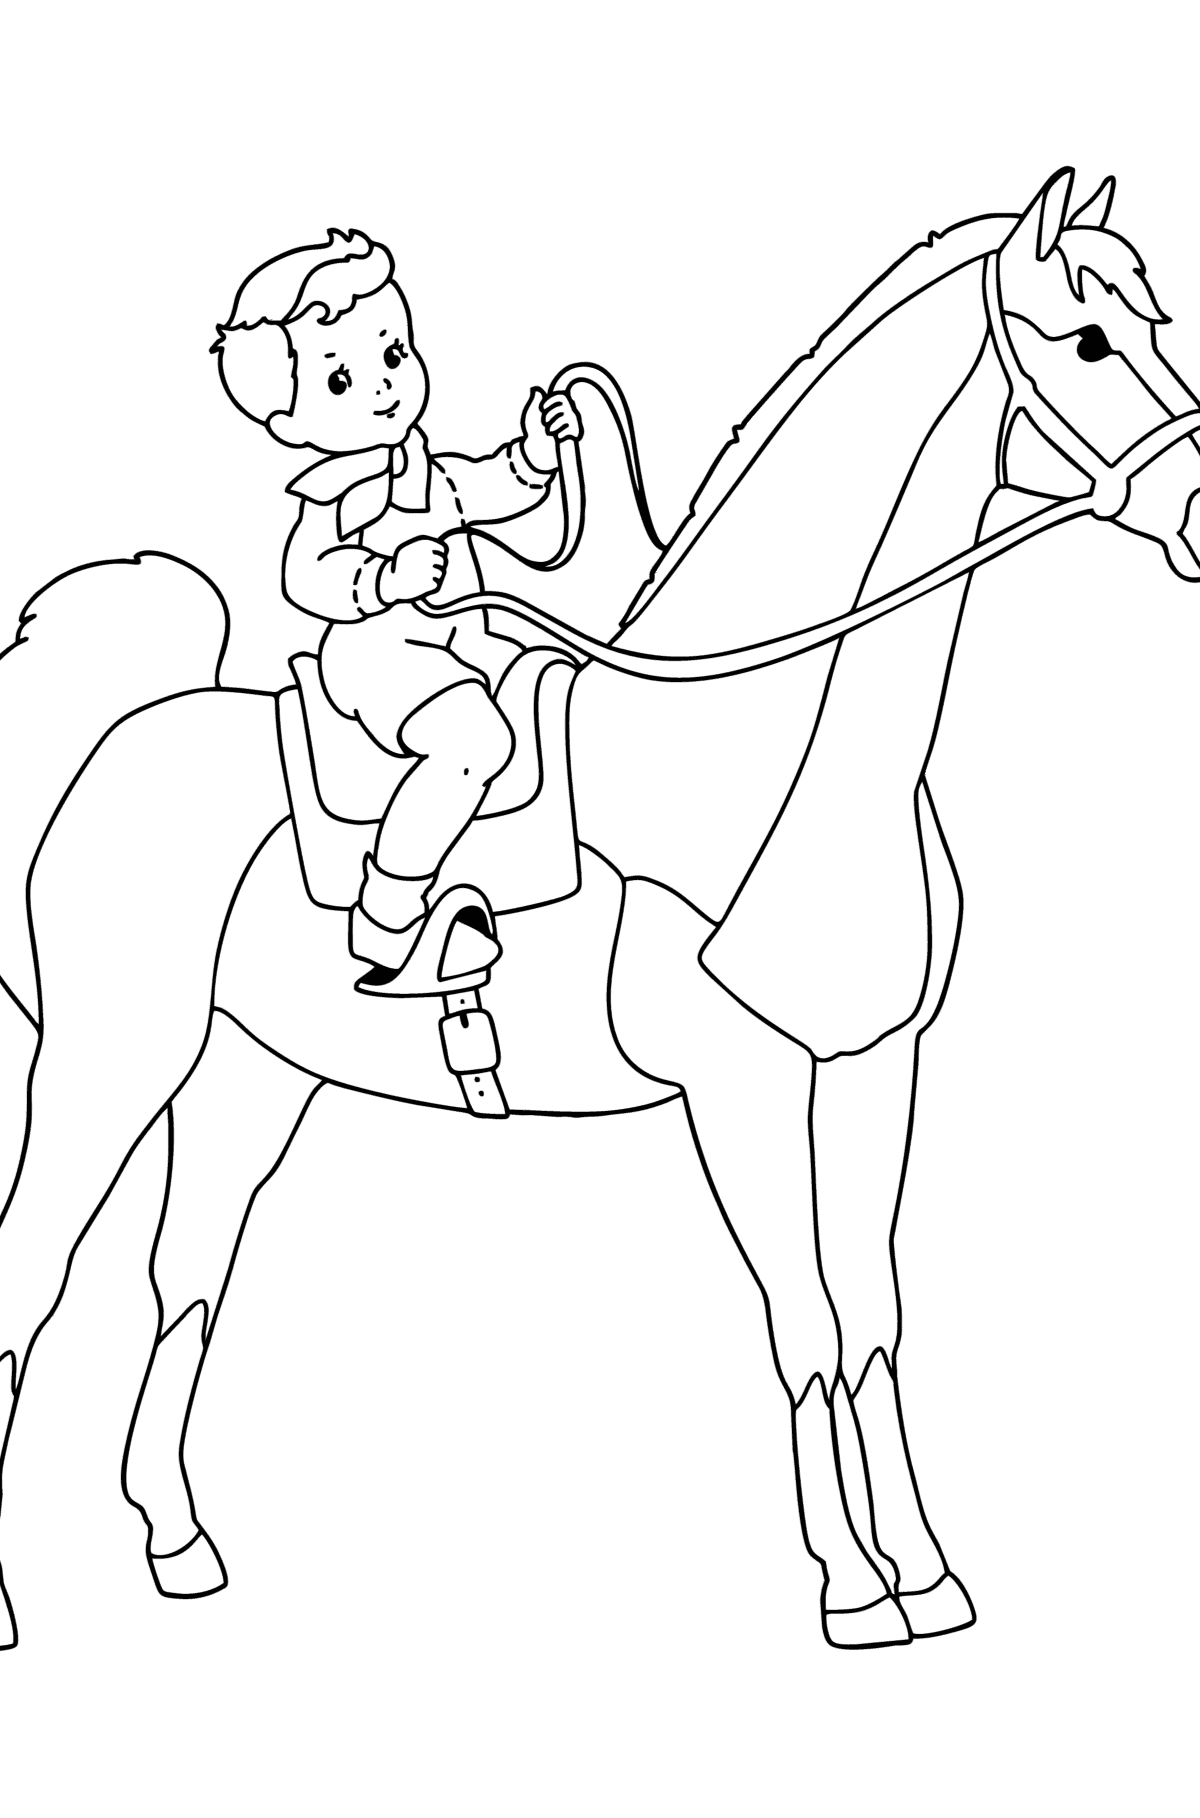 Раскраска Мальчик на лошади - Картинки для Детей